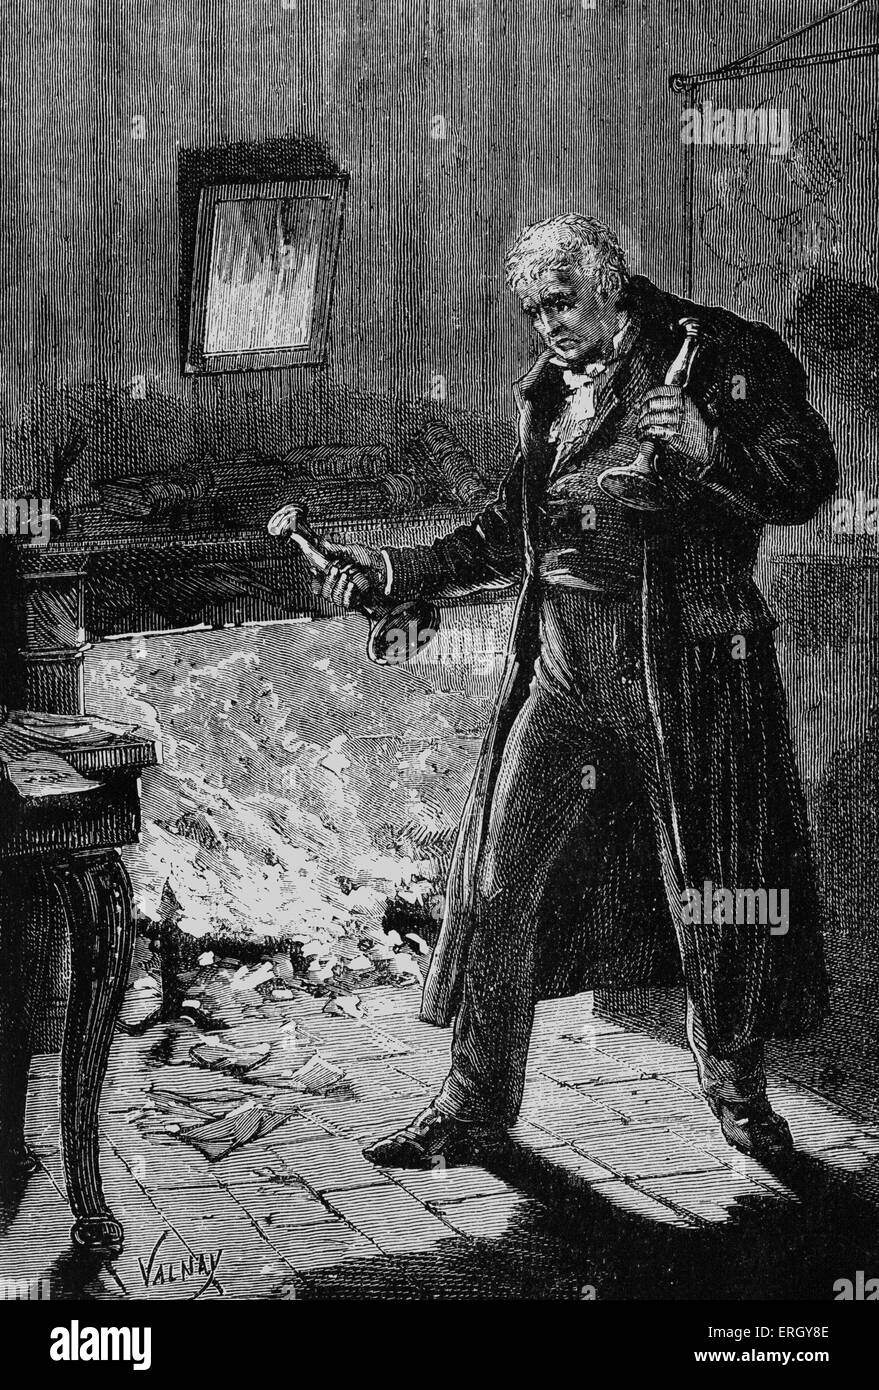 Les Miserables von Victor Hugo. Zuerst veröffentlicht 1862. Original-Illustration von Emile Bayard. Bildunterschrift lautet: "ins Feuer!". Stockfoto